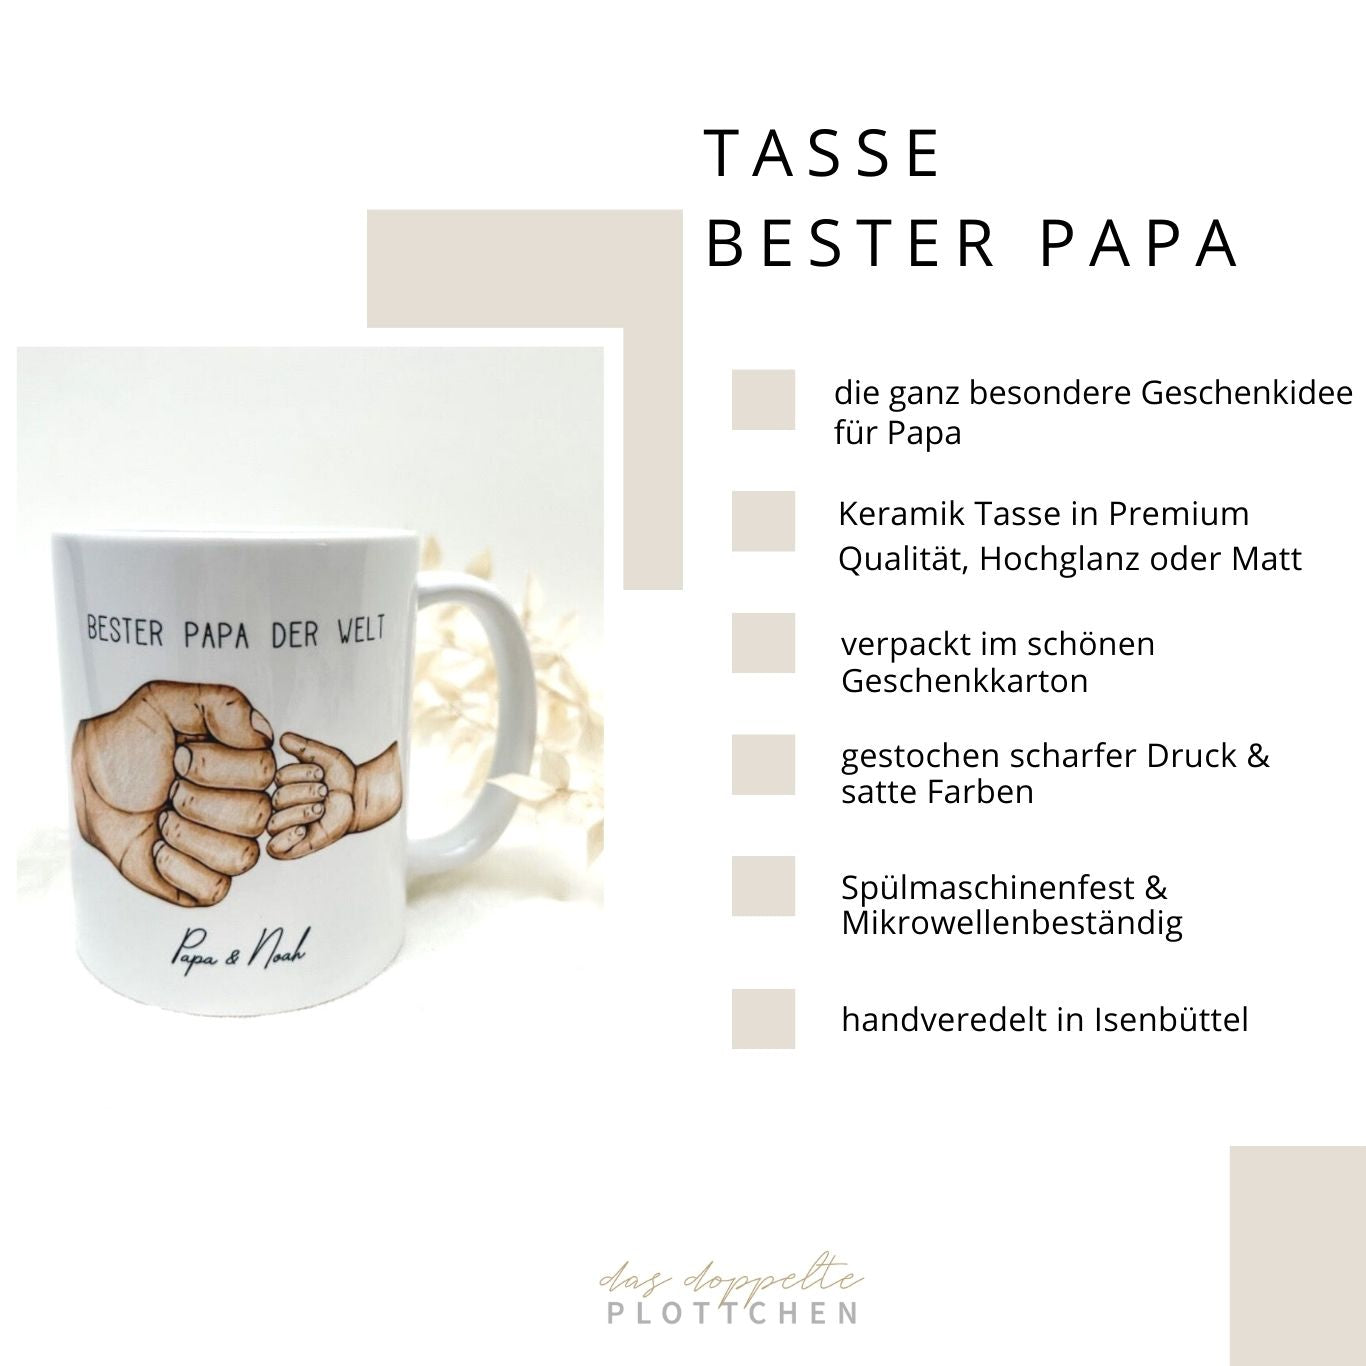 Tasse BESTER PAPA personalisiert das doppelte Plottchen®